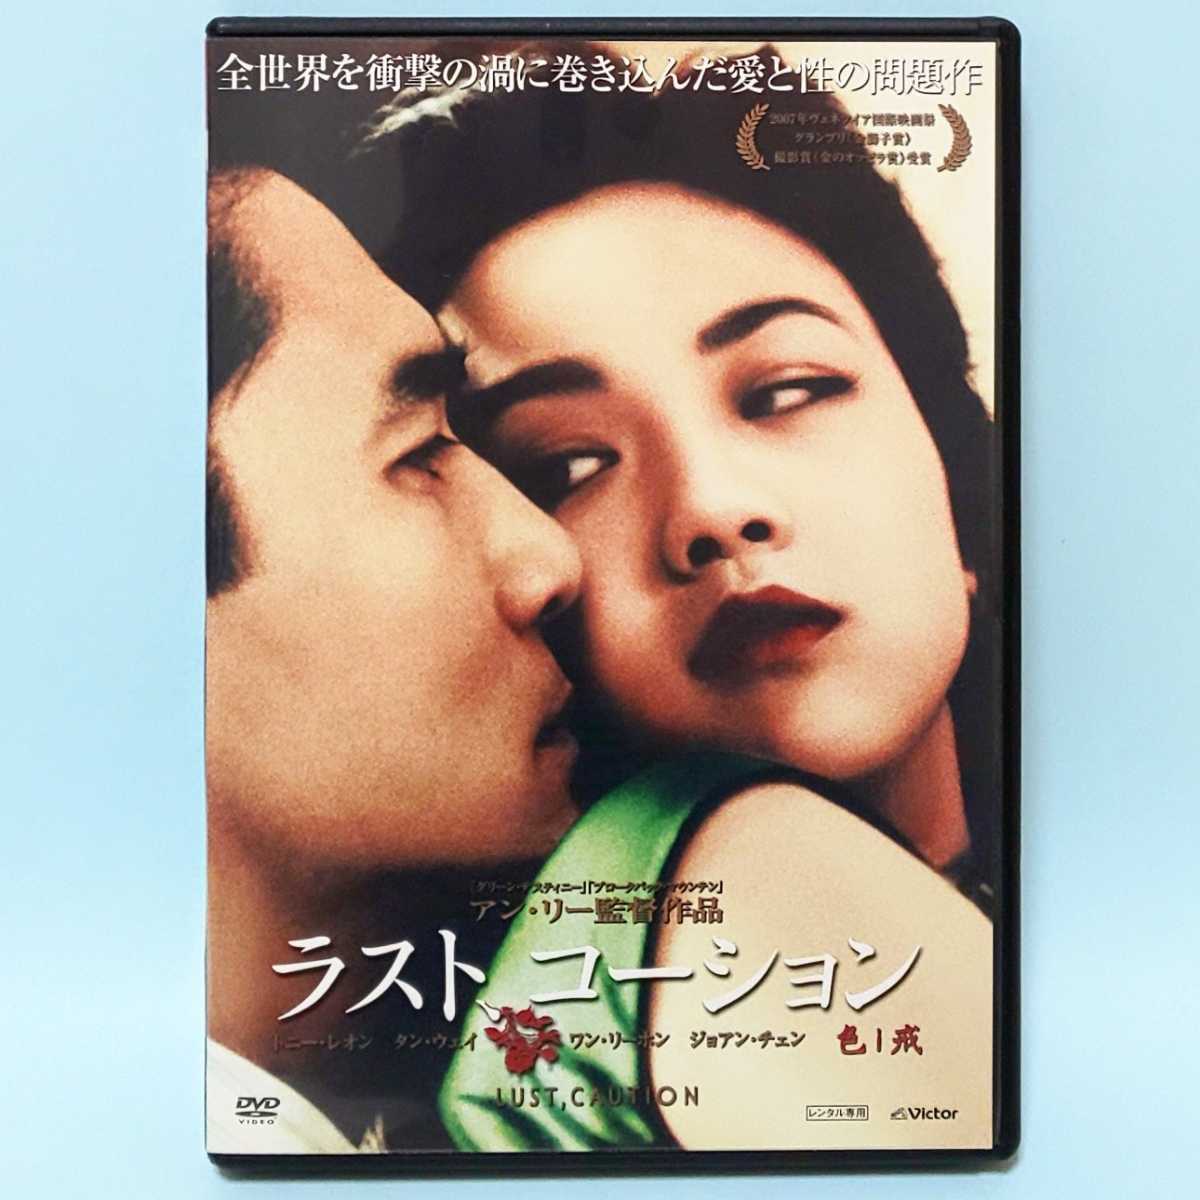 ラスト、コーション レンタル版 DVD トニー・レオン